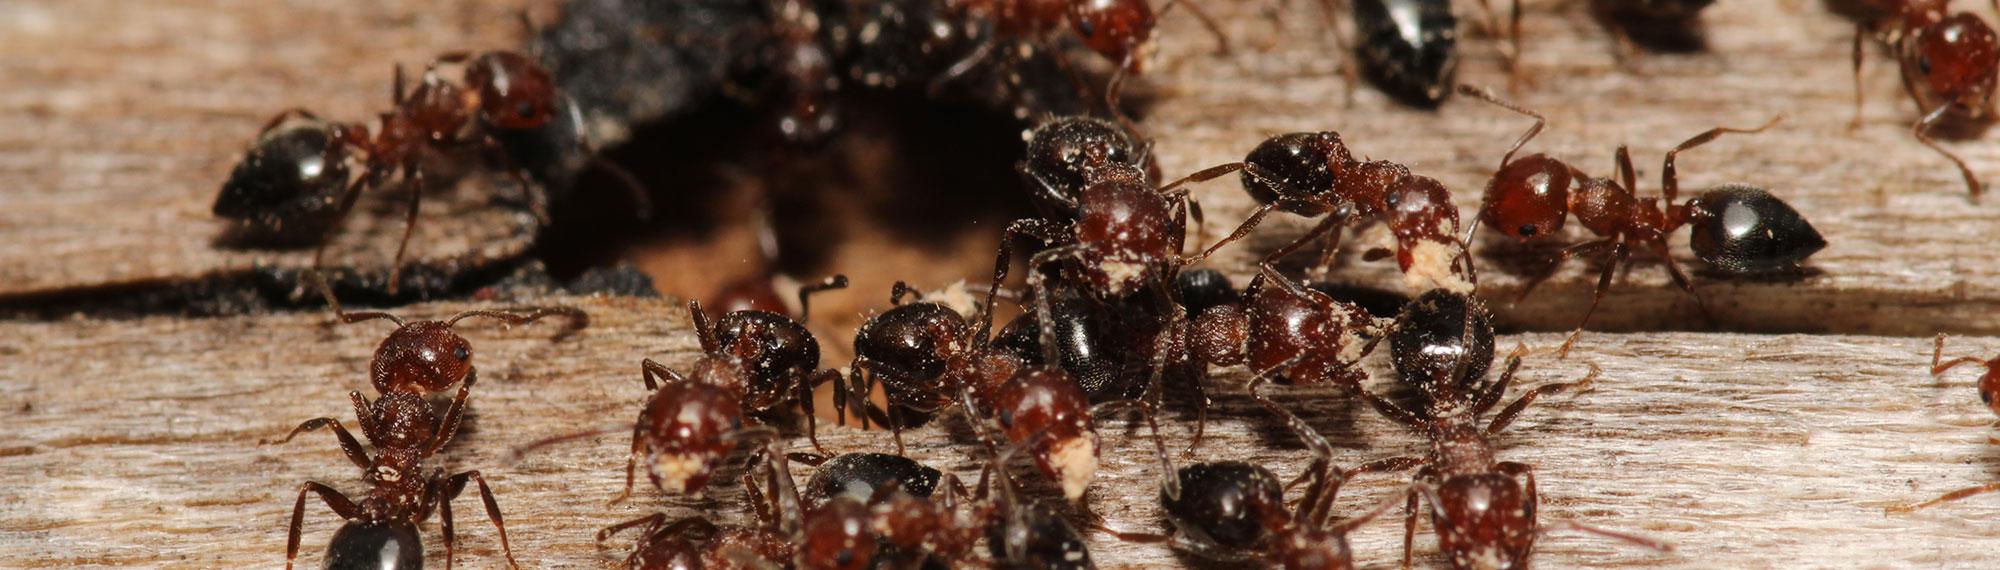 infestation of carpenter ants